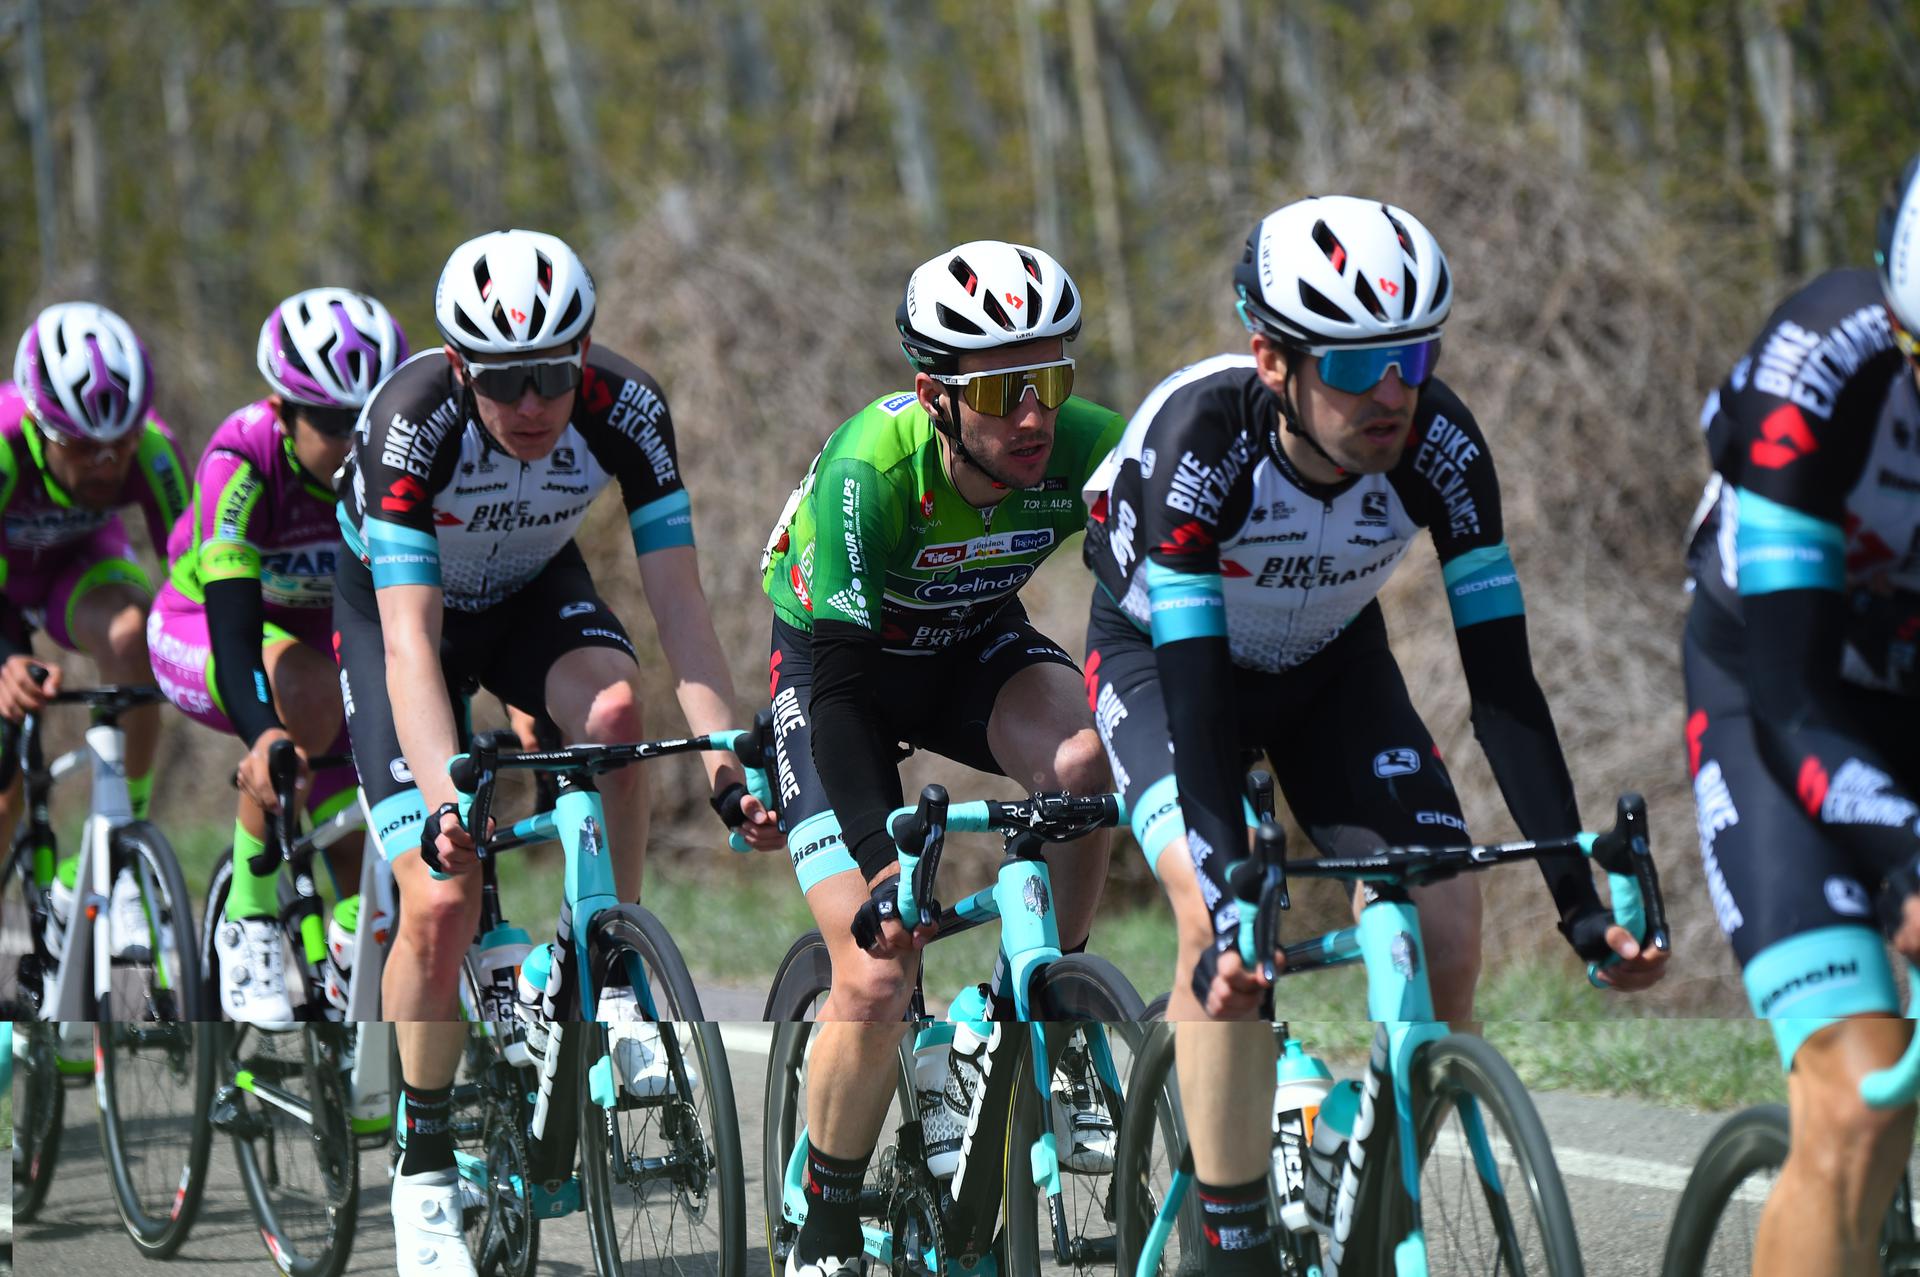  Simon Yates (in maglia verde) ha mantenuto la leadership in classifica generale grazie al lavoro del Team BikeExchange (Credits: Bettini Photo)